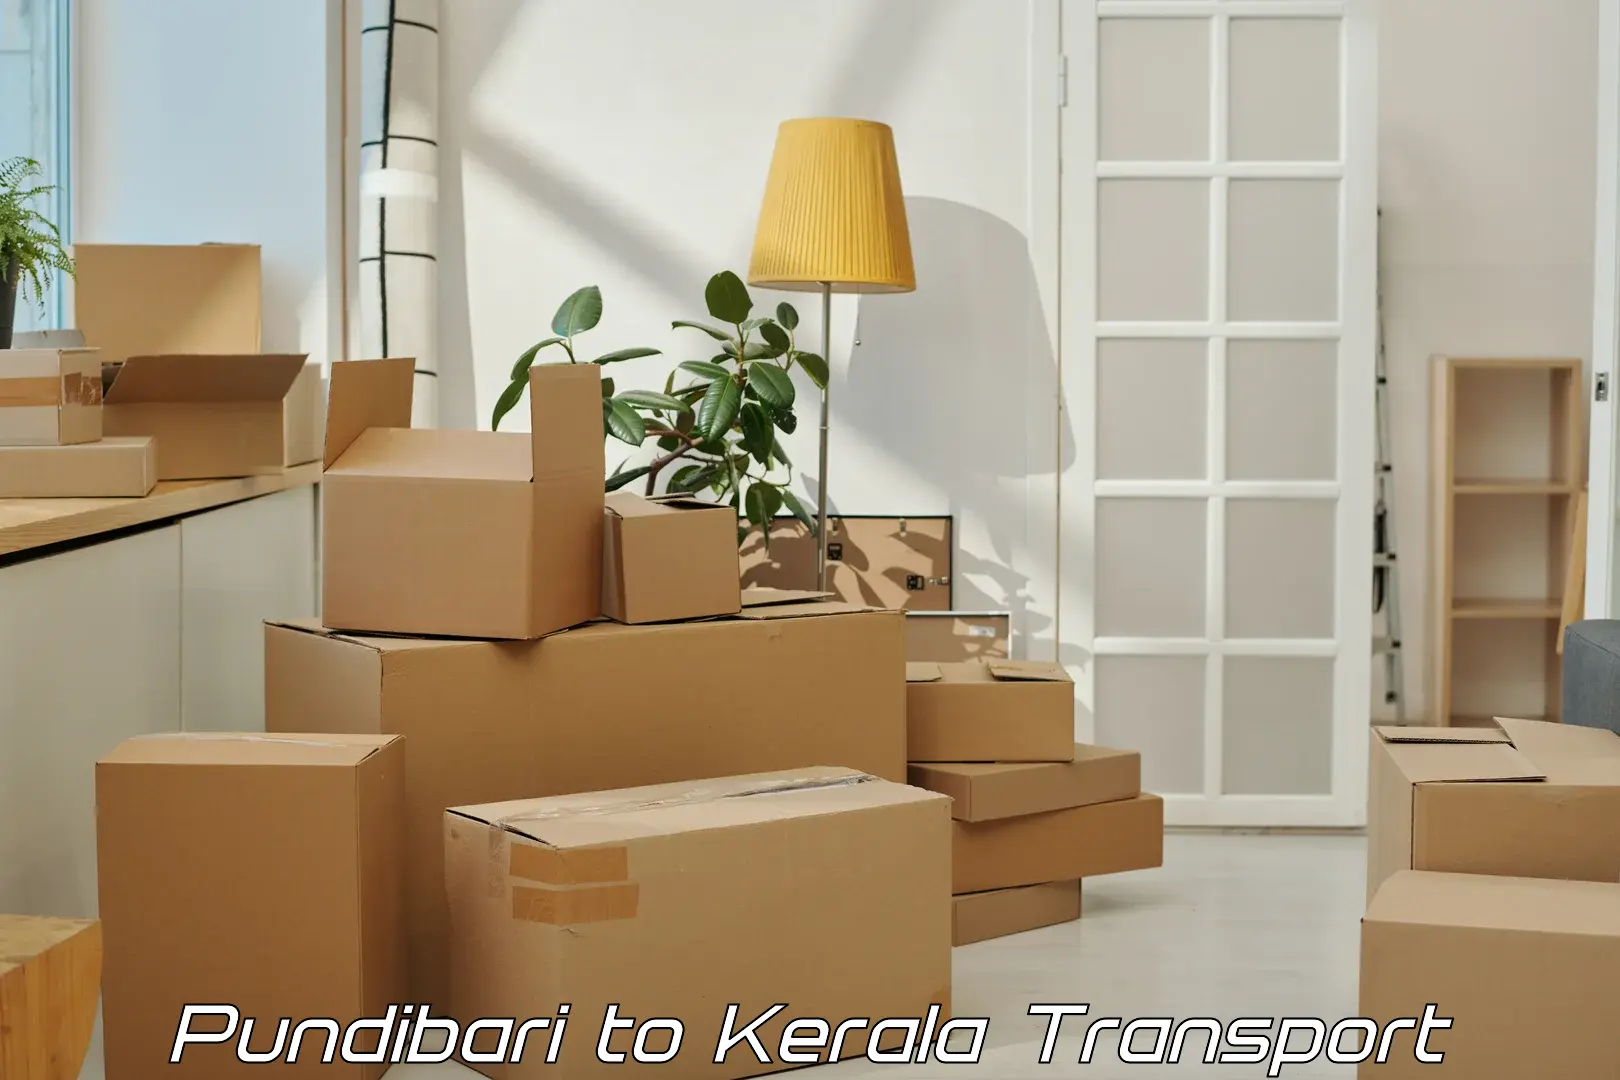 Transport in sharing Pundibari to Kalluvathukkal